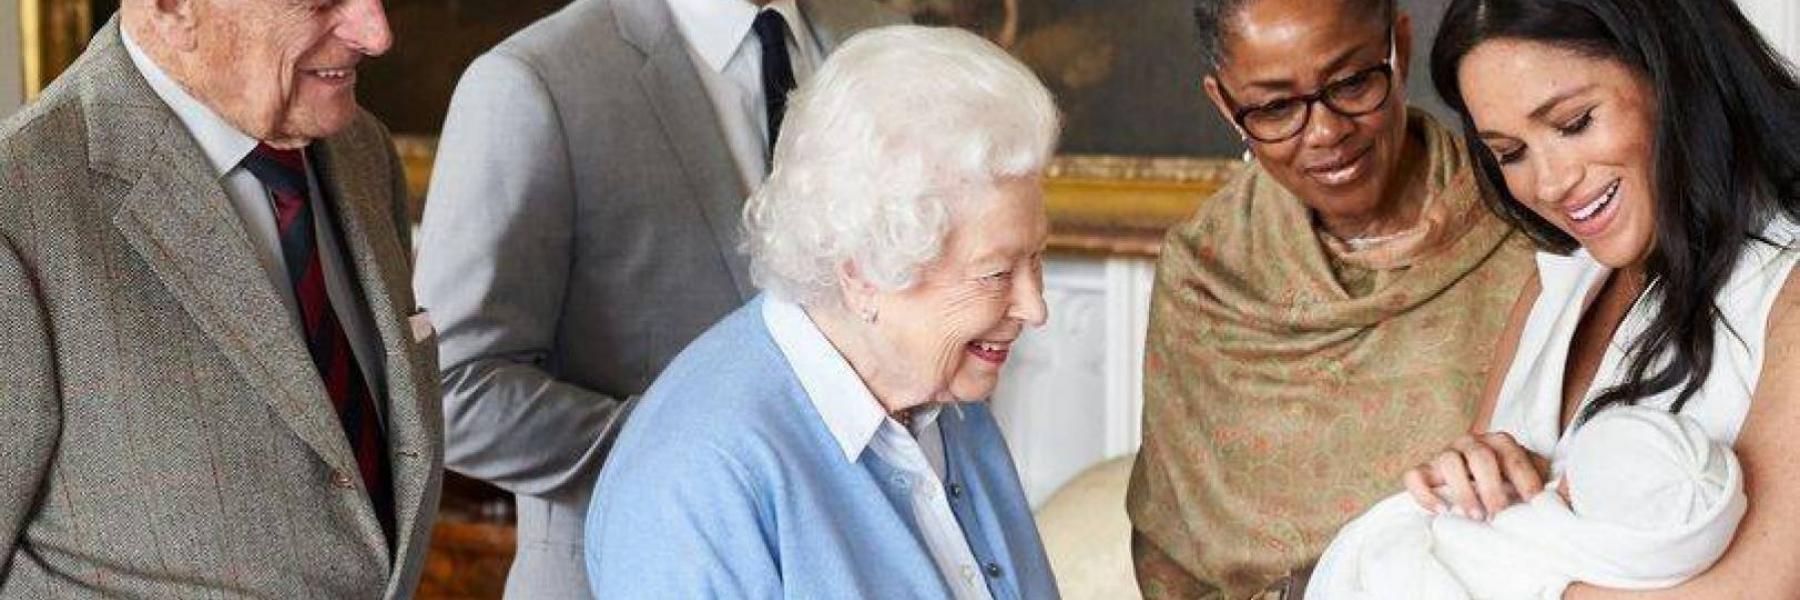 الأمير هاري وميغان ماركل يرغبان في تعميد ابنتهما في وندسور أمام الملكة